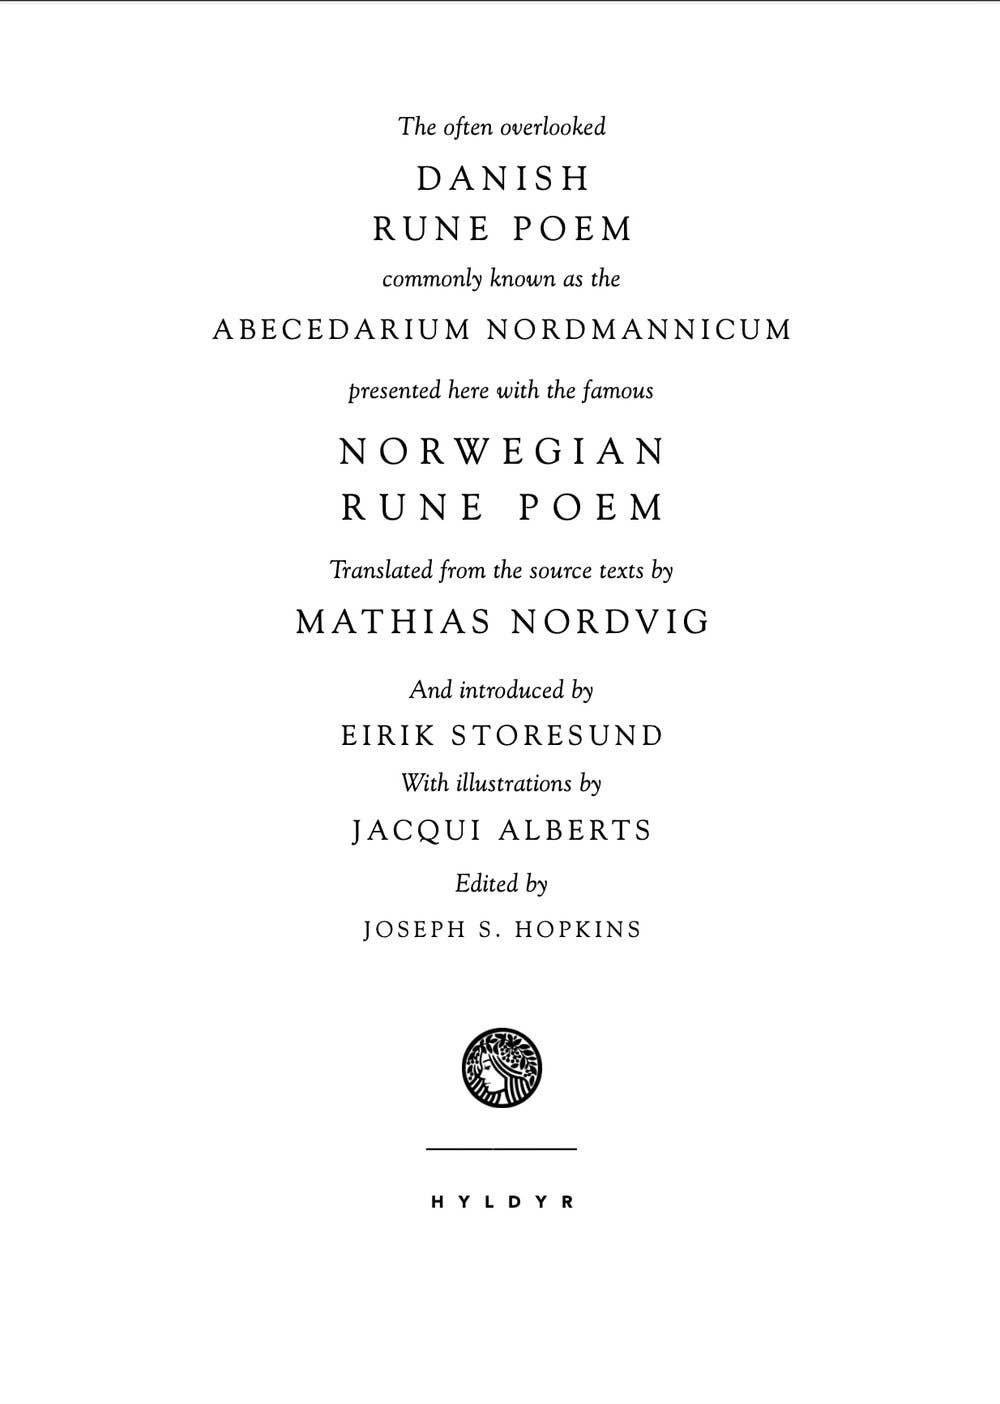 The Danish & Norwegian Rune Poems by Mathias Nordvig